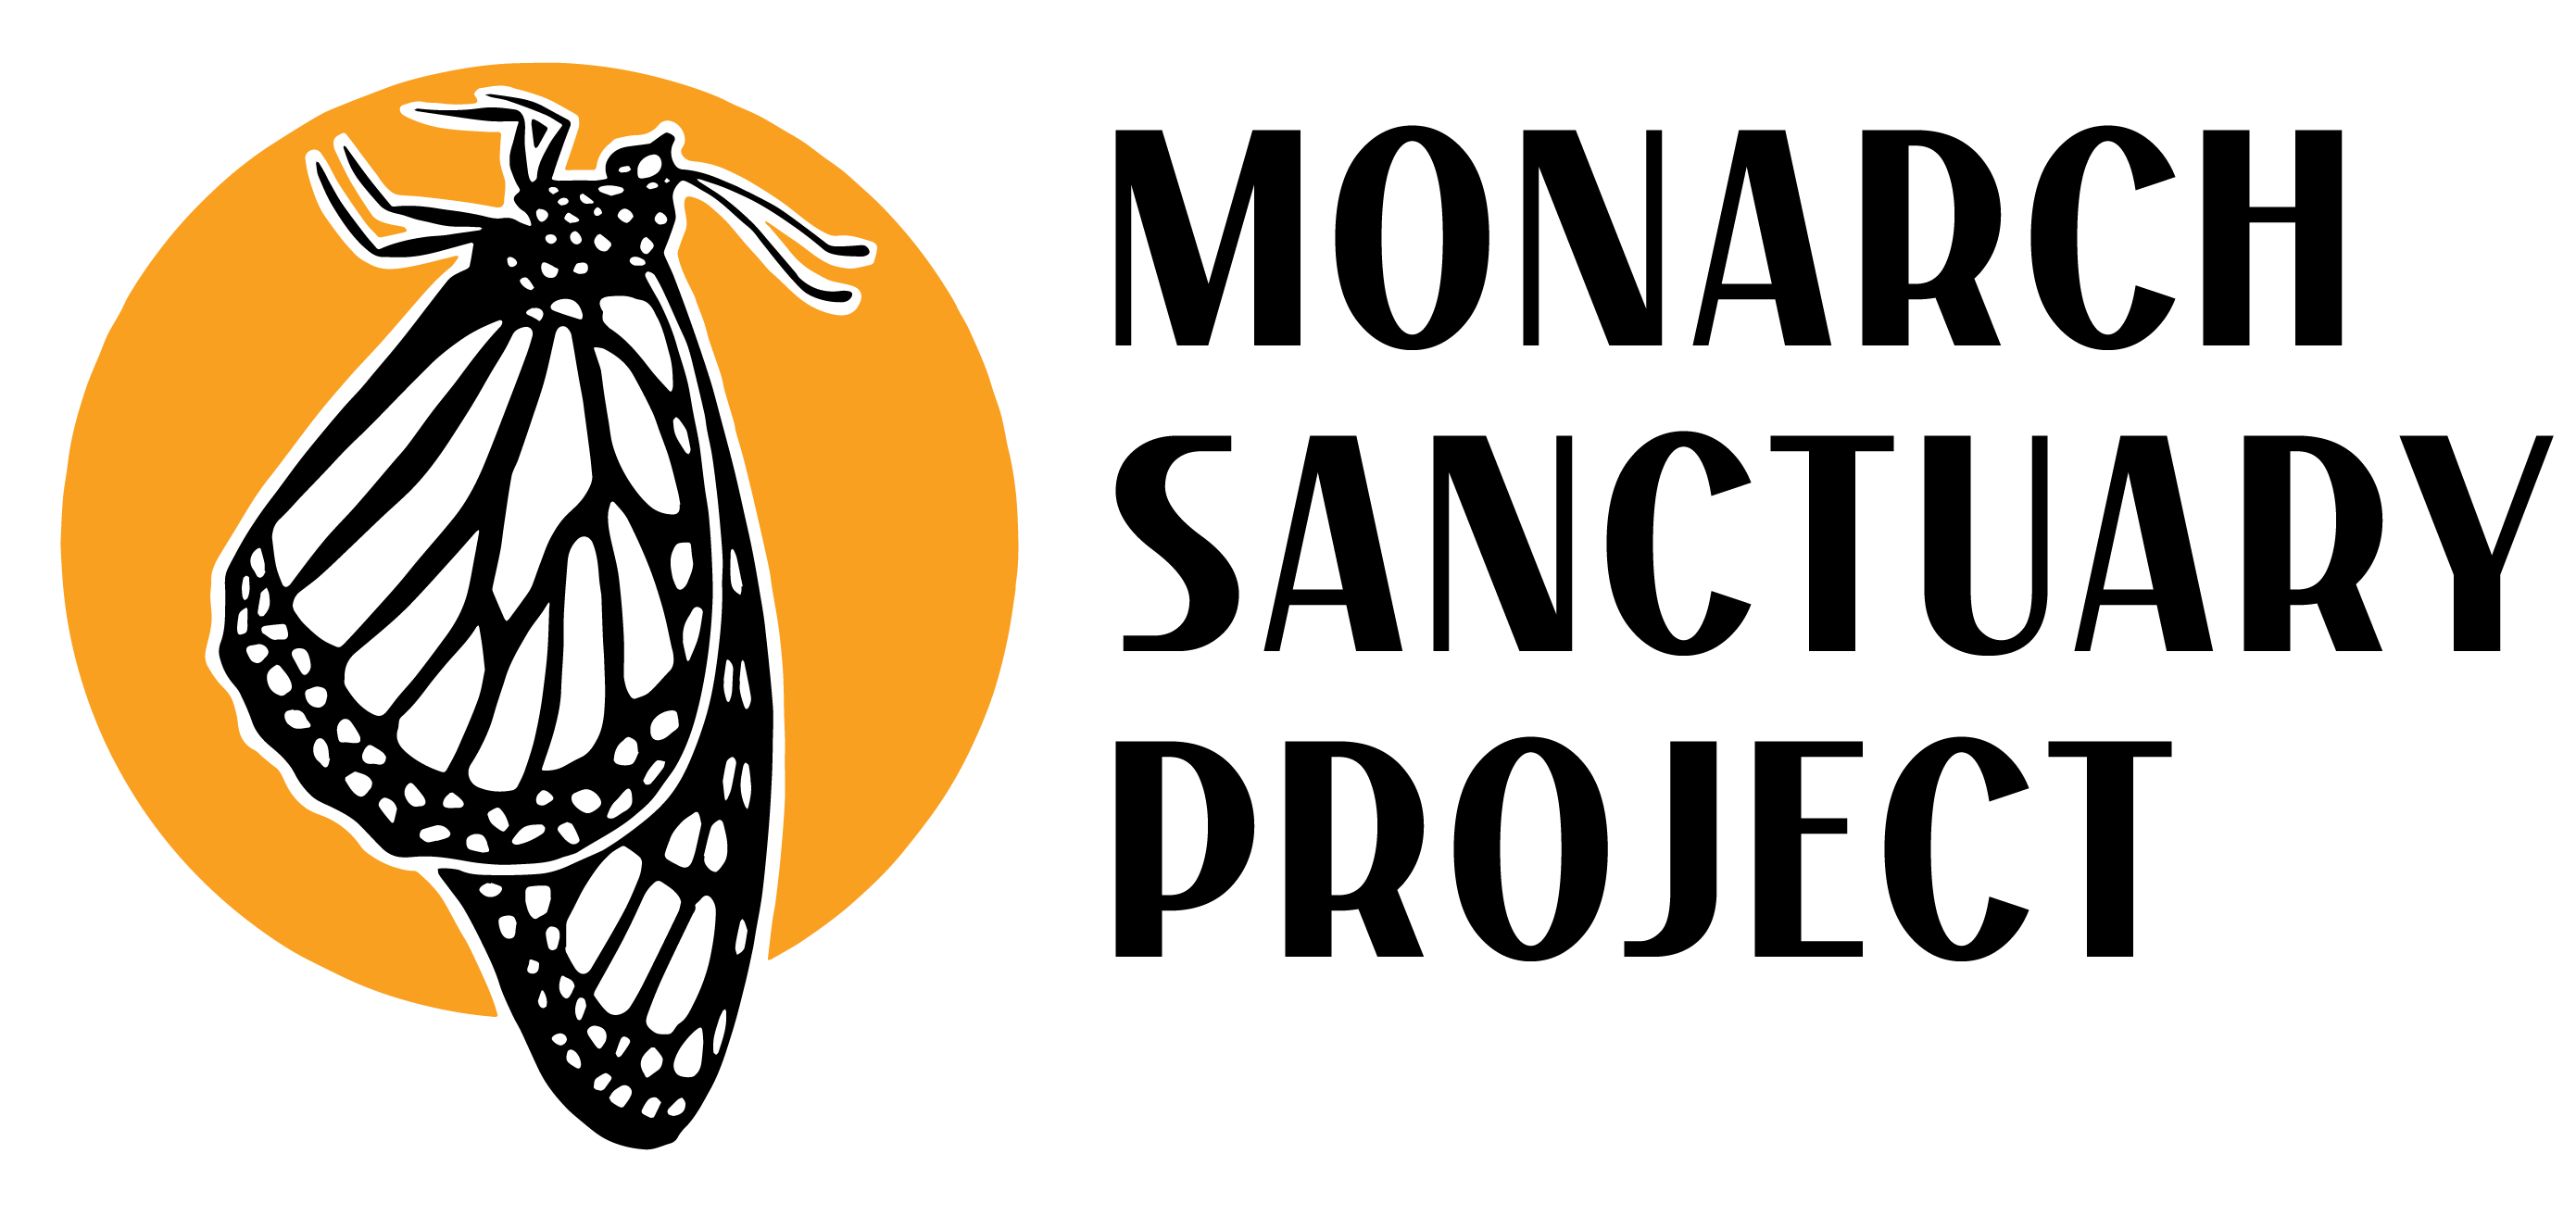 The Monarch Sanctuary Project logo